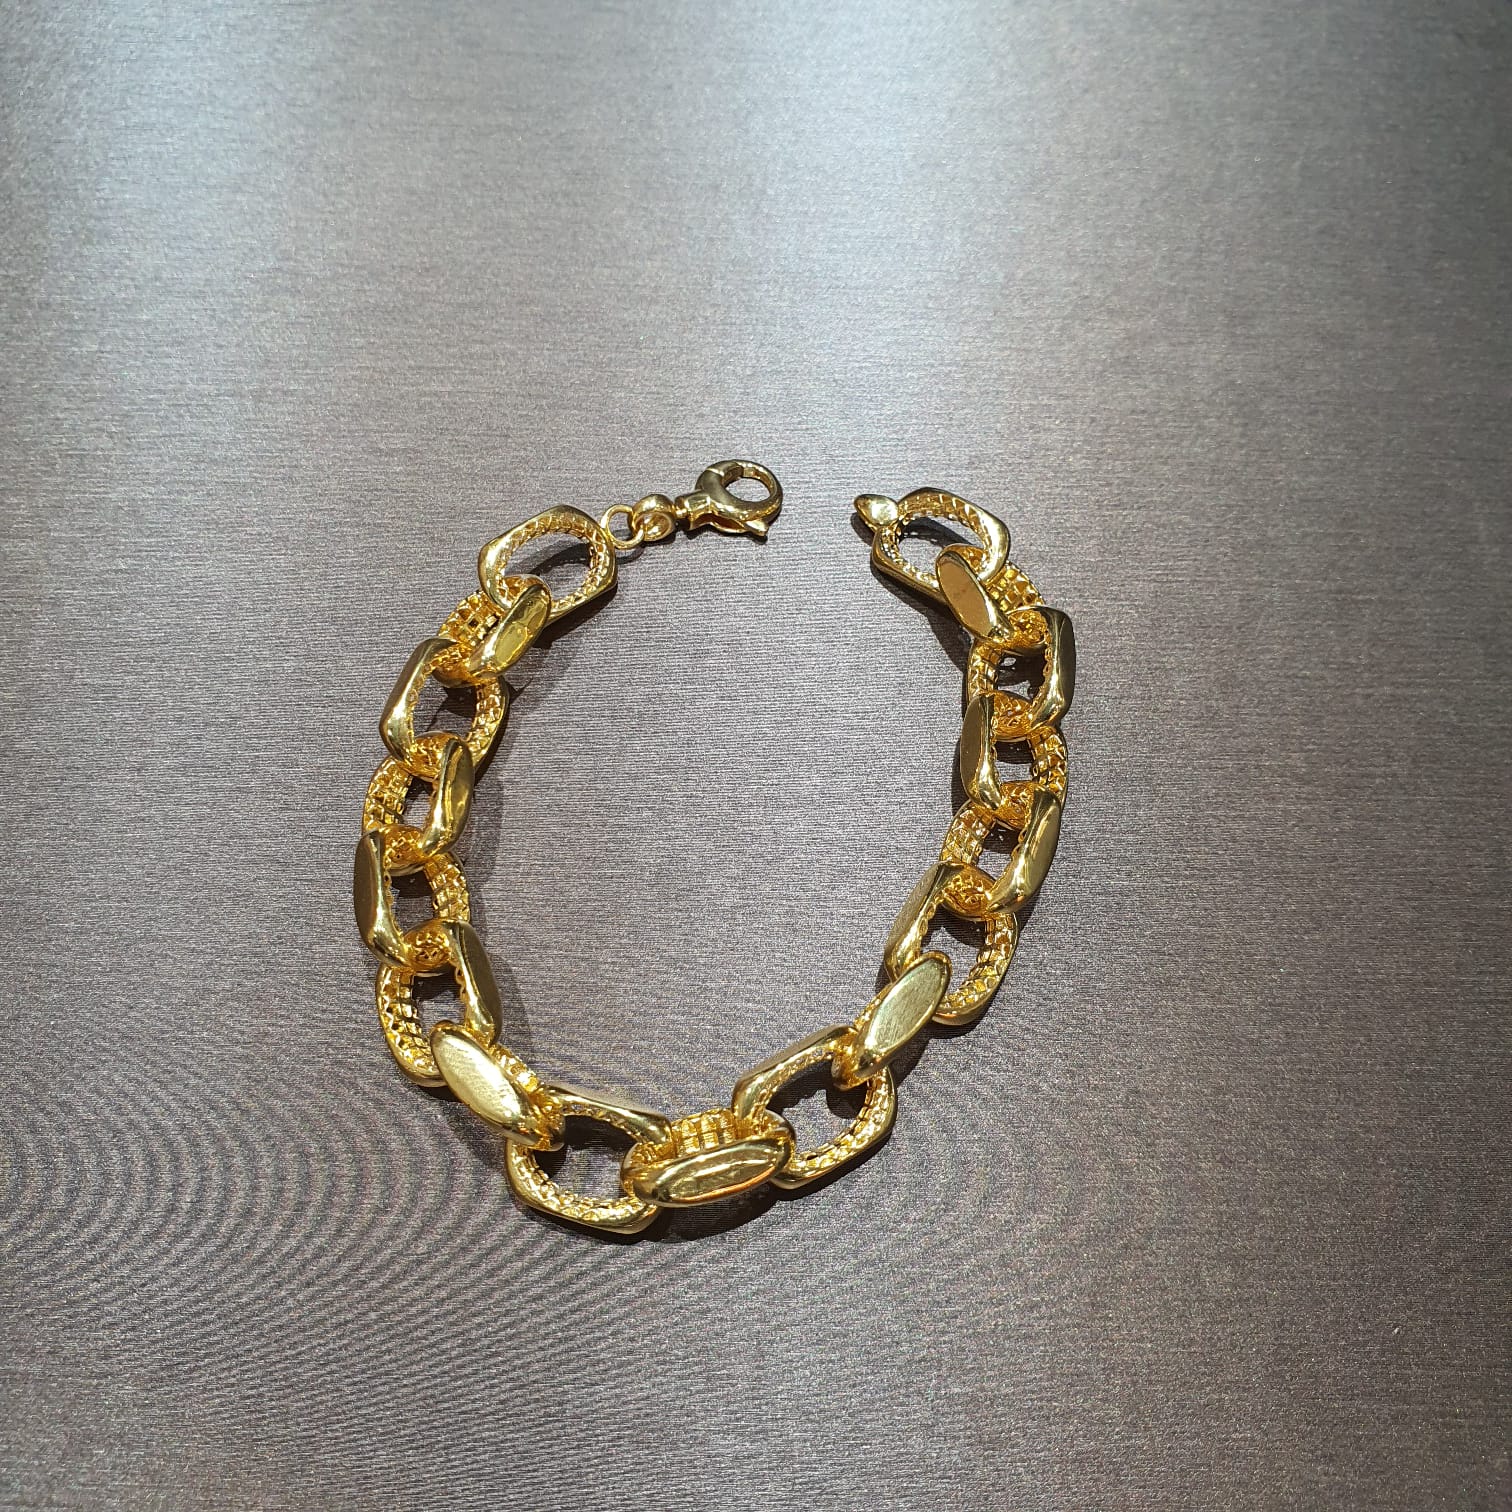 22k / 916 Gold Anchor Bracelet Shiny V2-Bracelets-Best Gold Shop